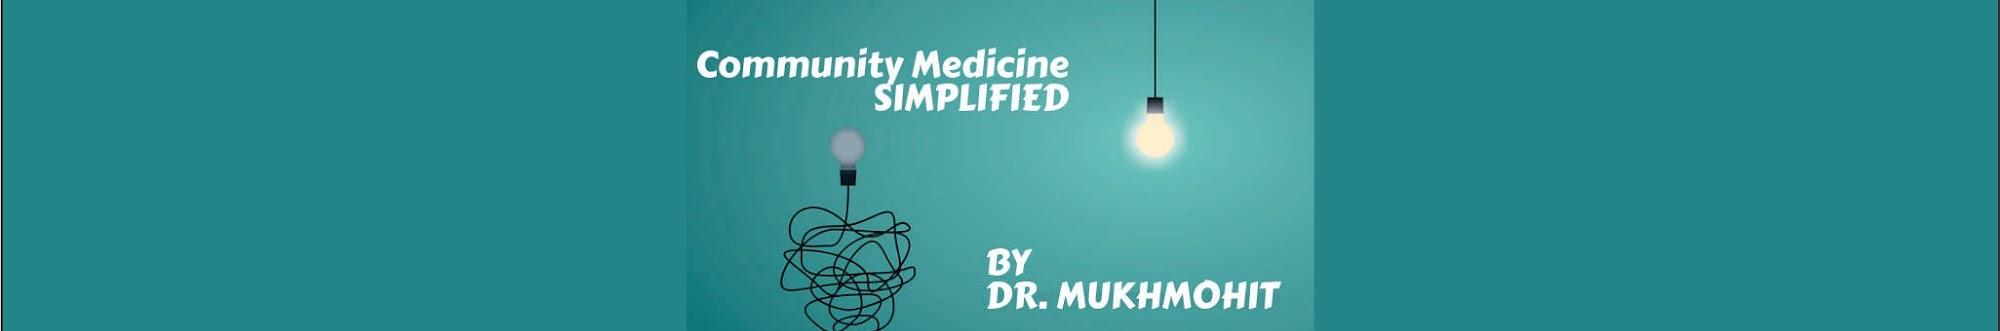 Dr.Mukhmohit singh's Community Medicine Simplified